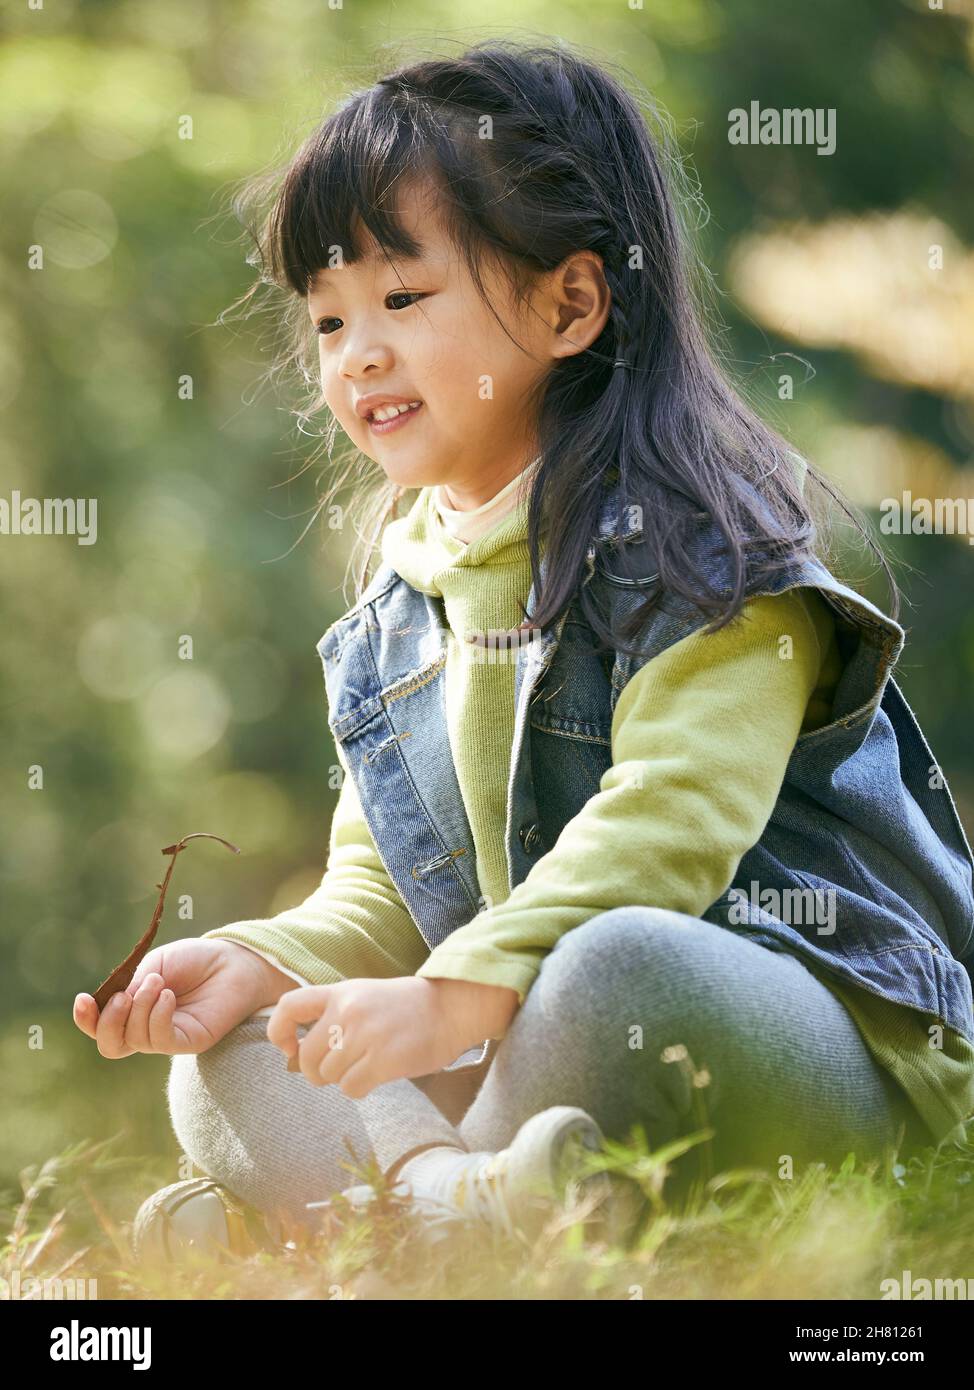 portrait extérieur d'une petite fille asiatique assise sur l'herbe heureuse et souriante Banque D'Images